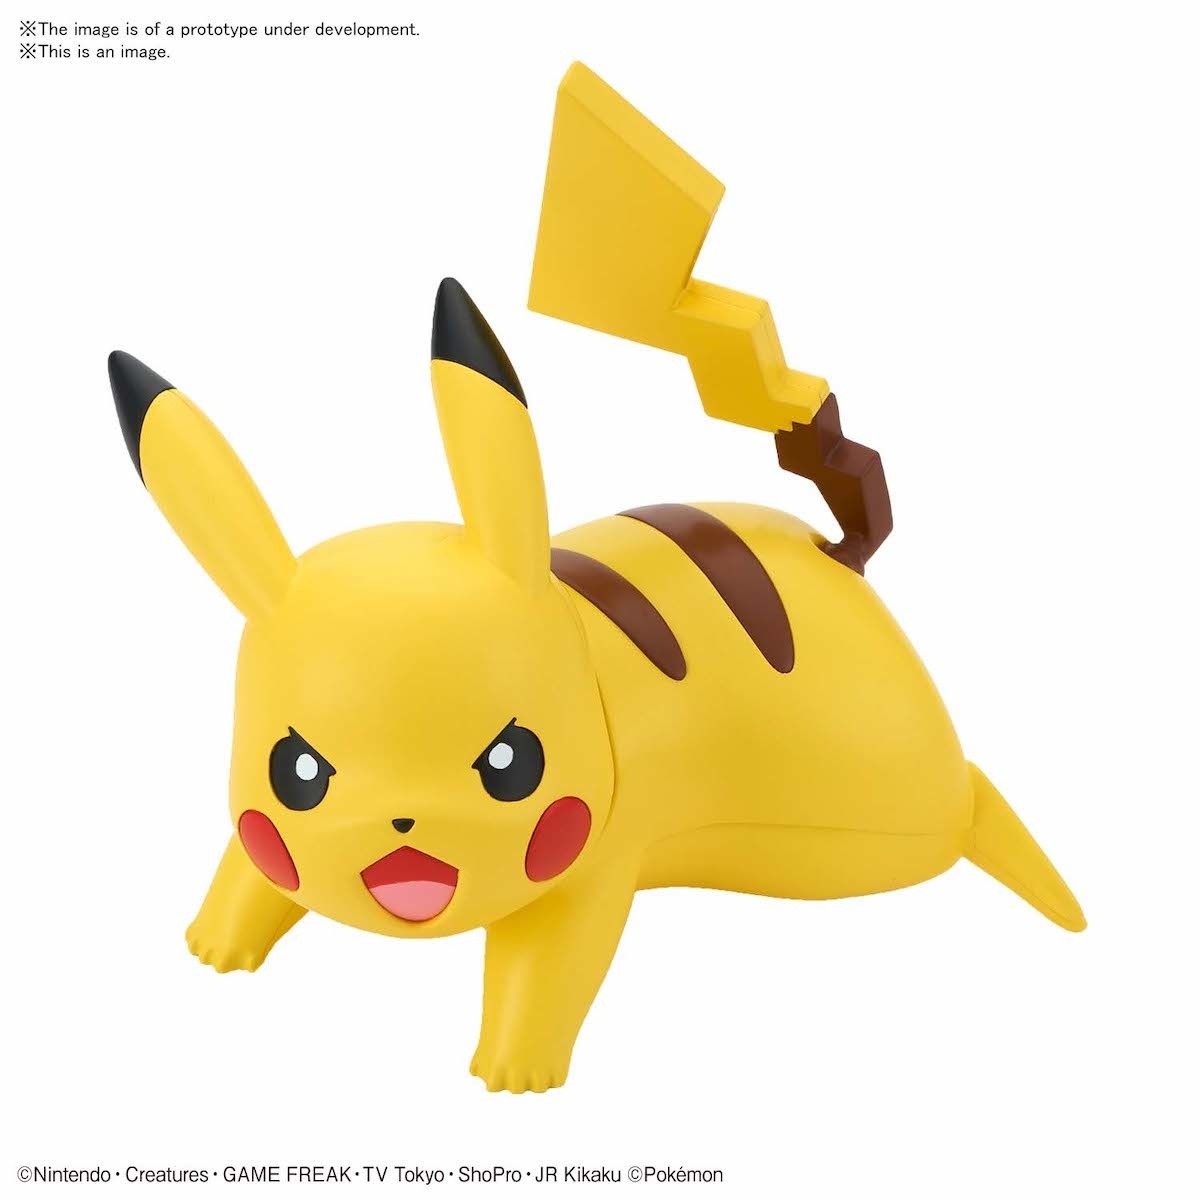 Pokémon Pikachu Battle Pose